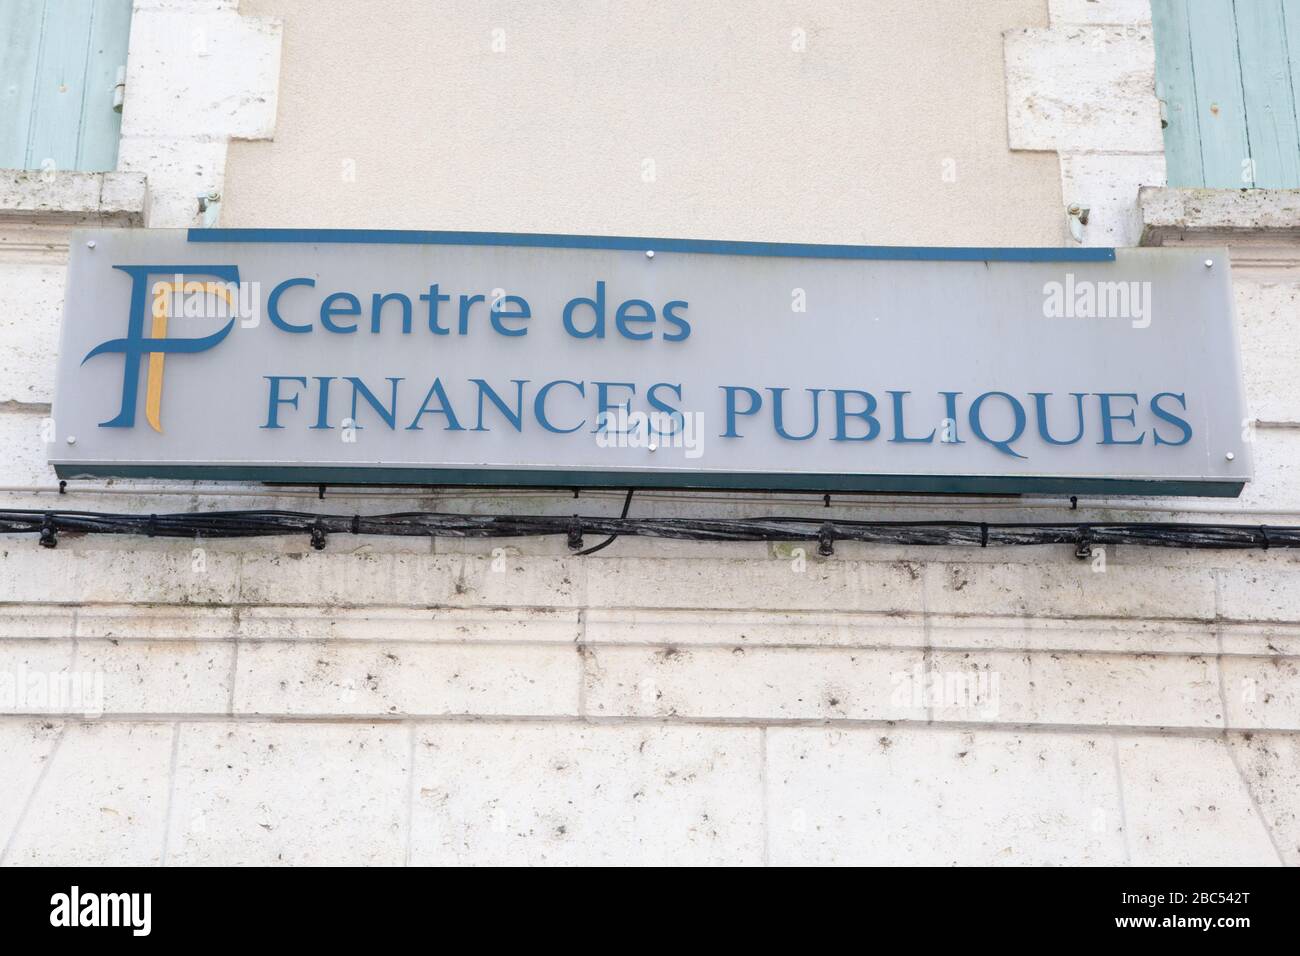 Bordeaux , Aquitaine / France - 03 03 2020 : centre des Finances Publiques logo sign building office French public finance administration Stock Photo